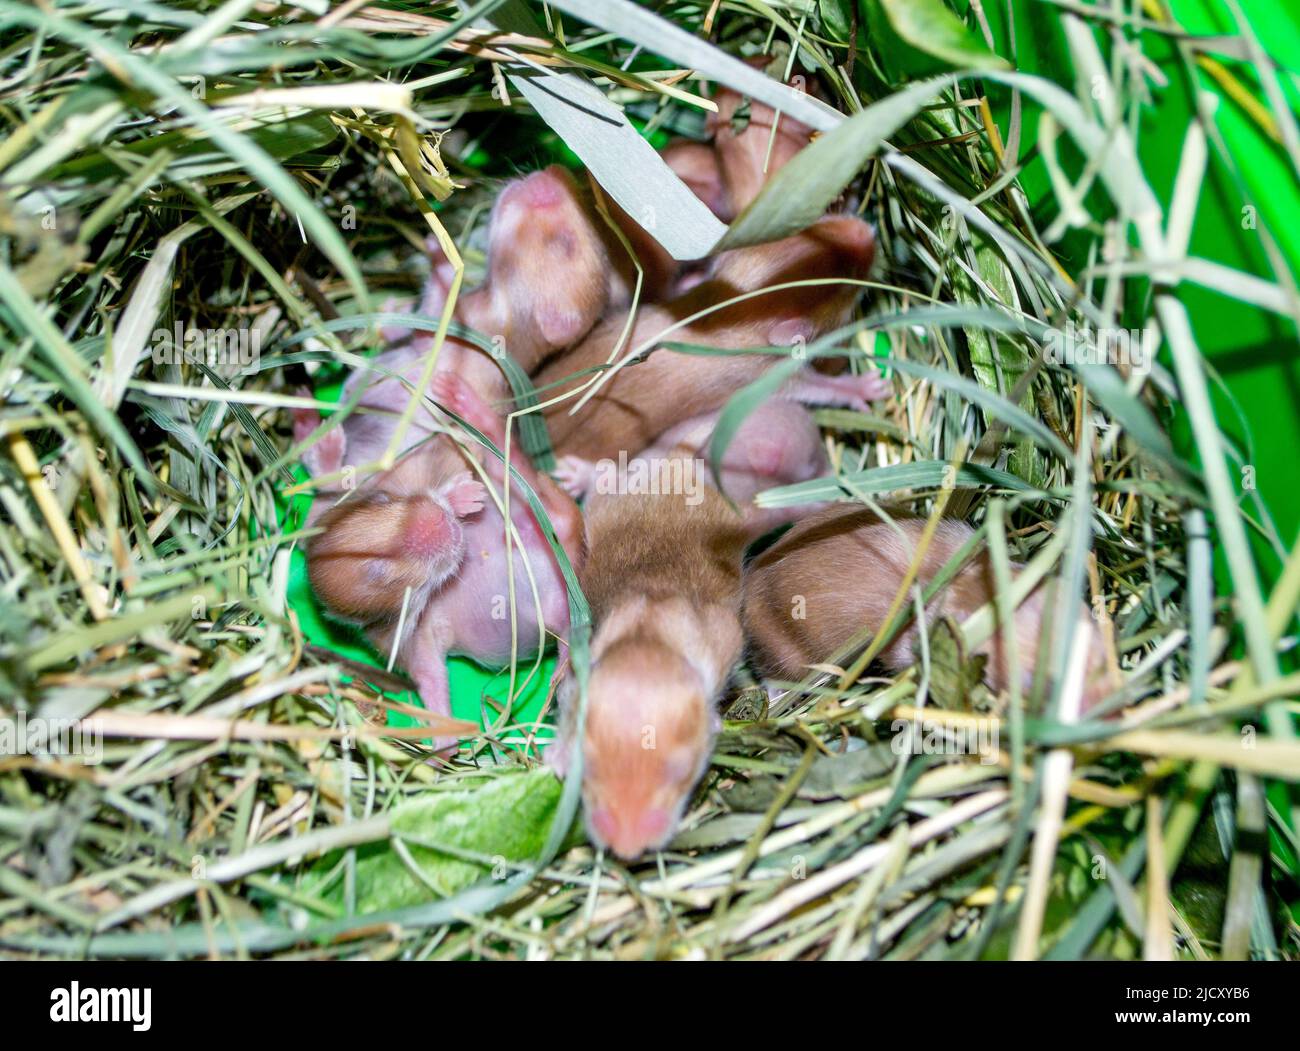 Nahaufnahme des Hamsternests. Viele kleine Hamster im Gras nisten. Neugeborene Hamster. Kleine Nagetiere. Haustiere. Syrische Hamster. Sehr kleine blinde Hamster. Fortpflanzung und Zucht von Haustieren. Nagetier-Jungen Stockfoto